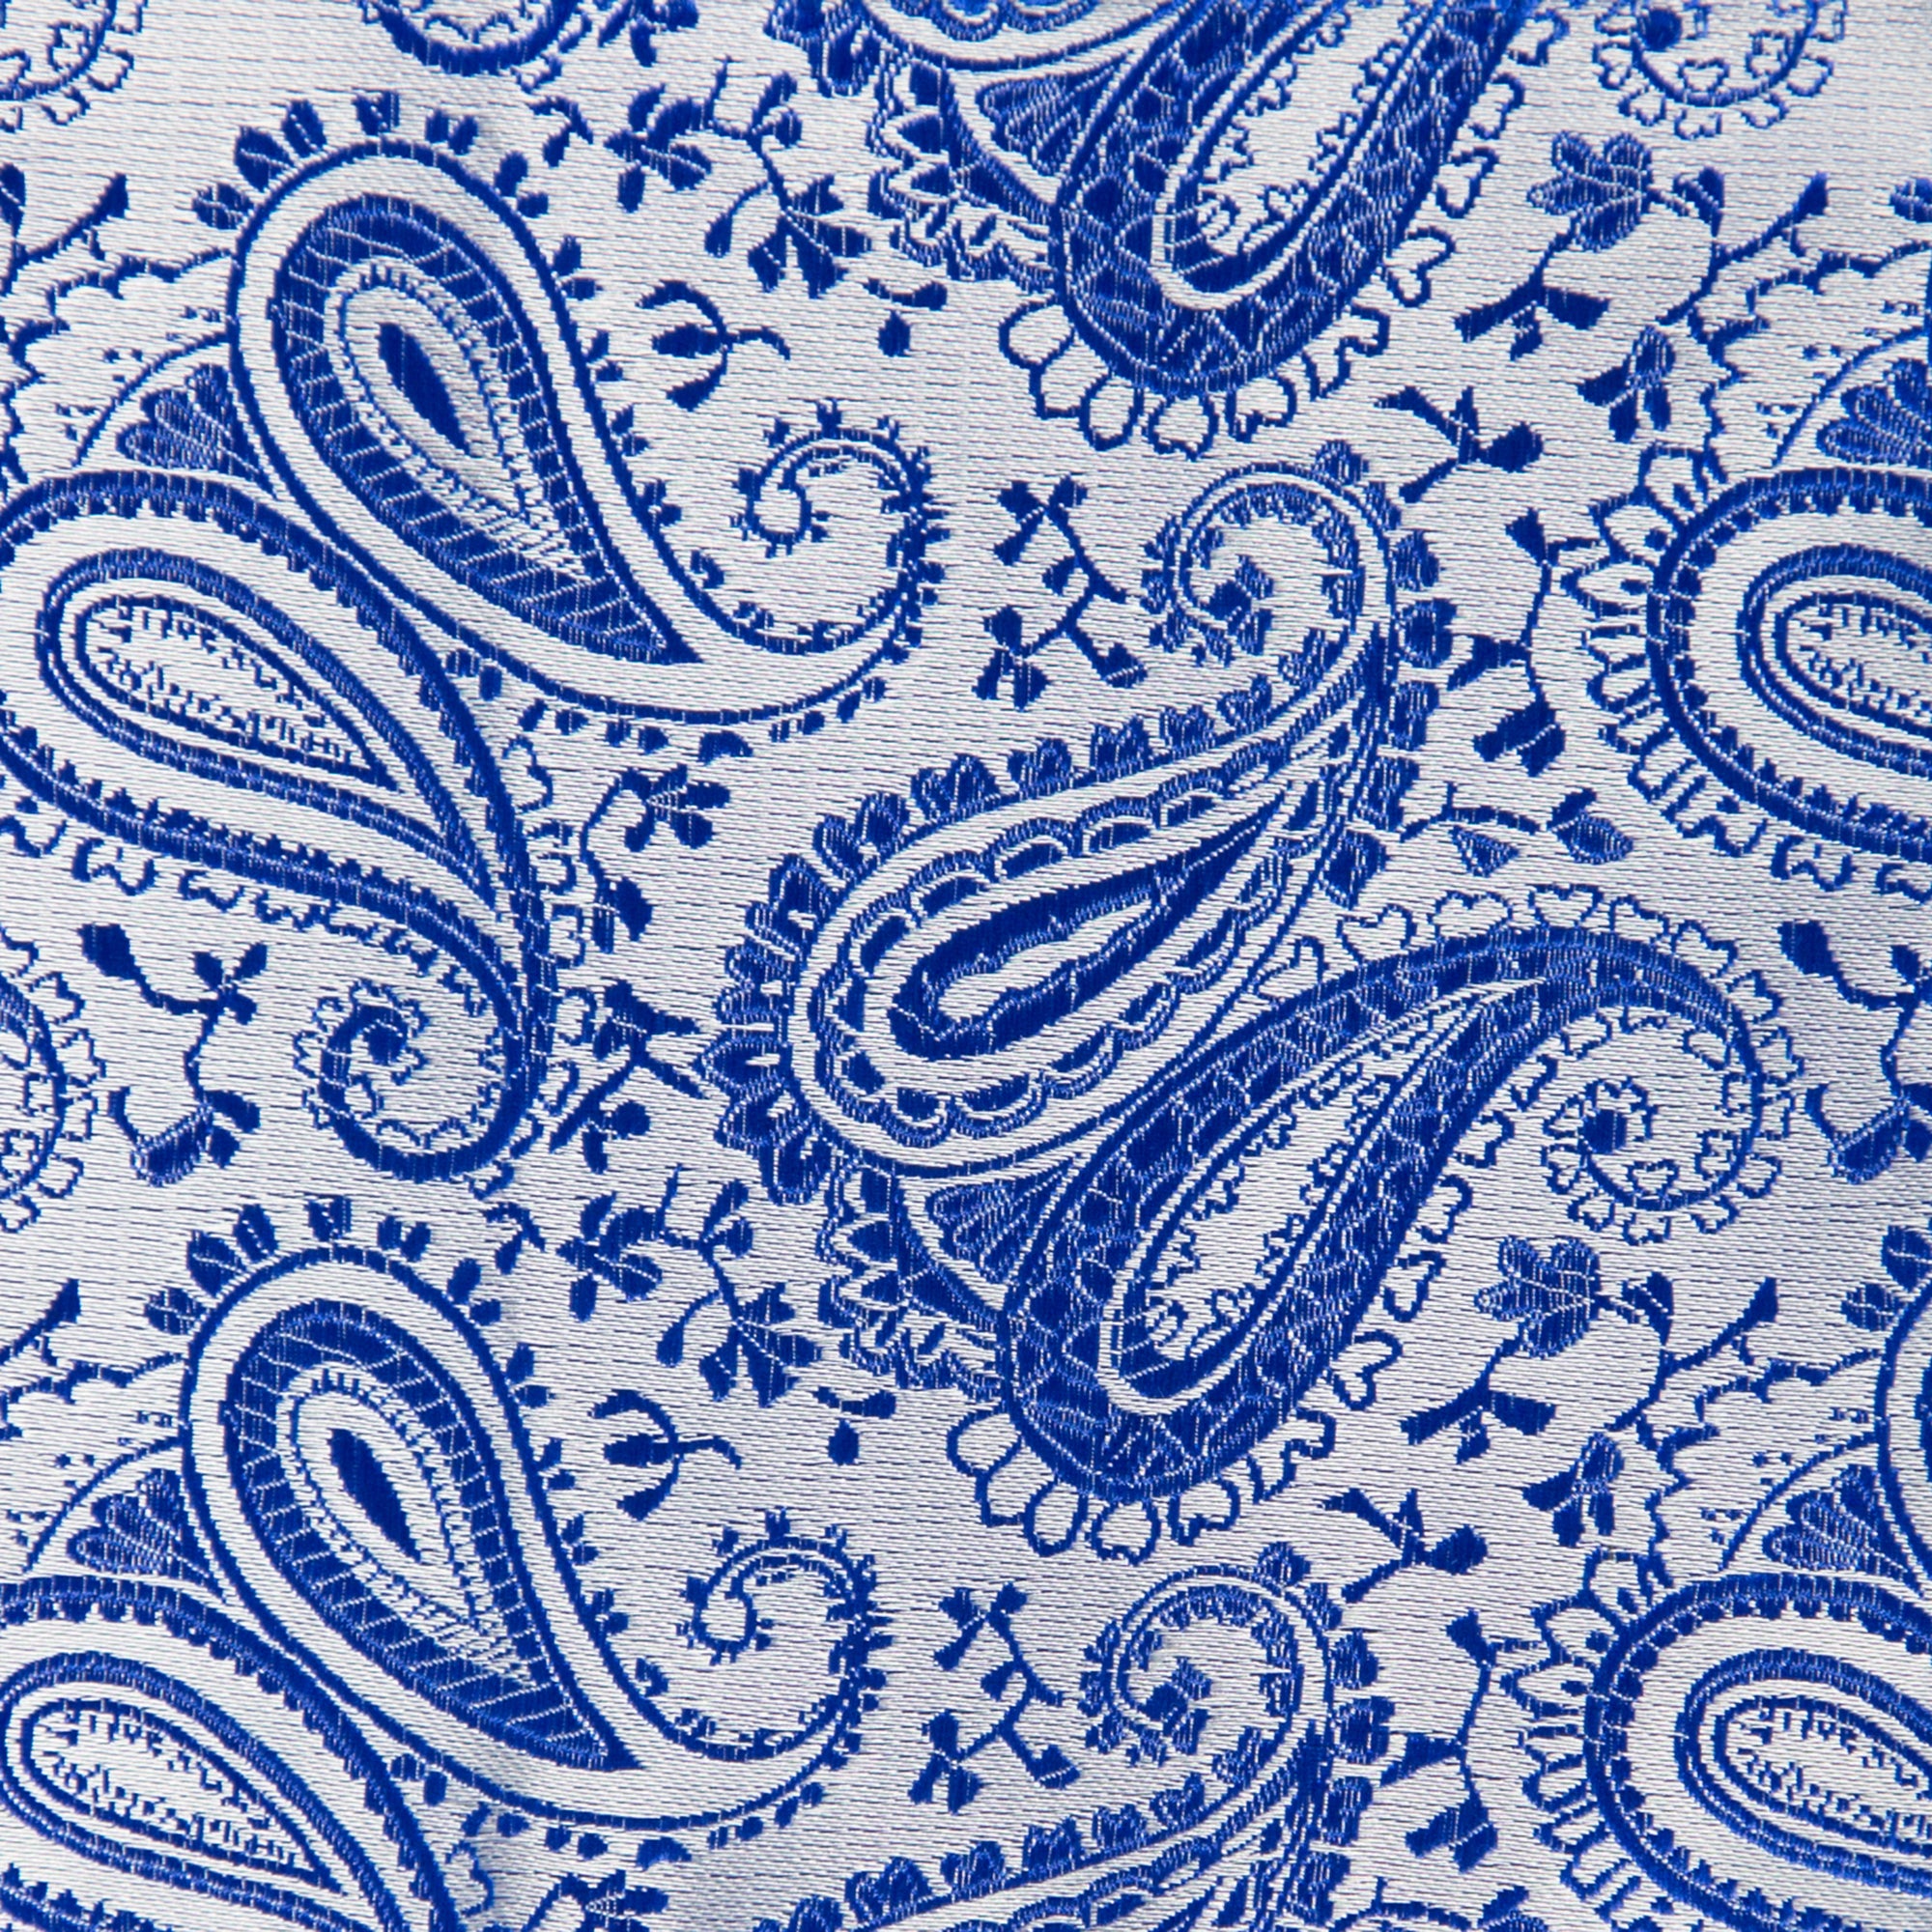 Silber-Blaue - Sie Krawatten | GASSANI GASSANIshop.de Paisley-Krawatte designt für Kaufen